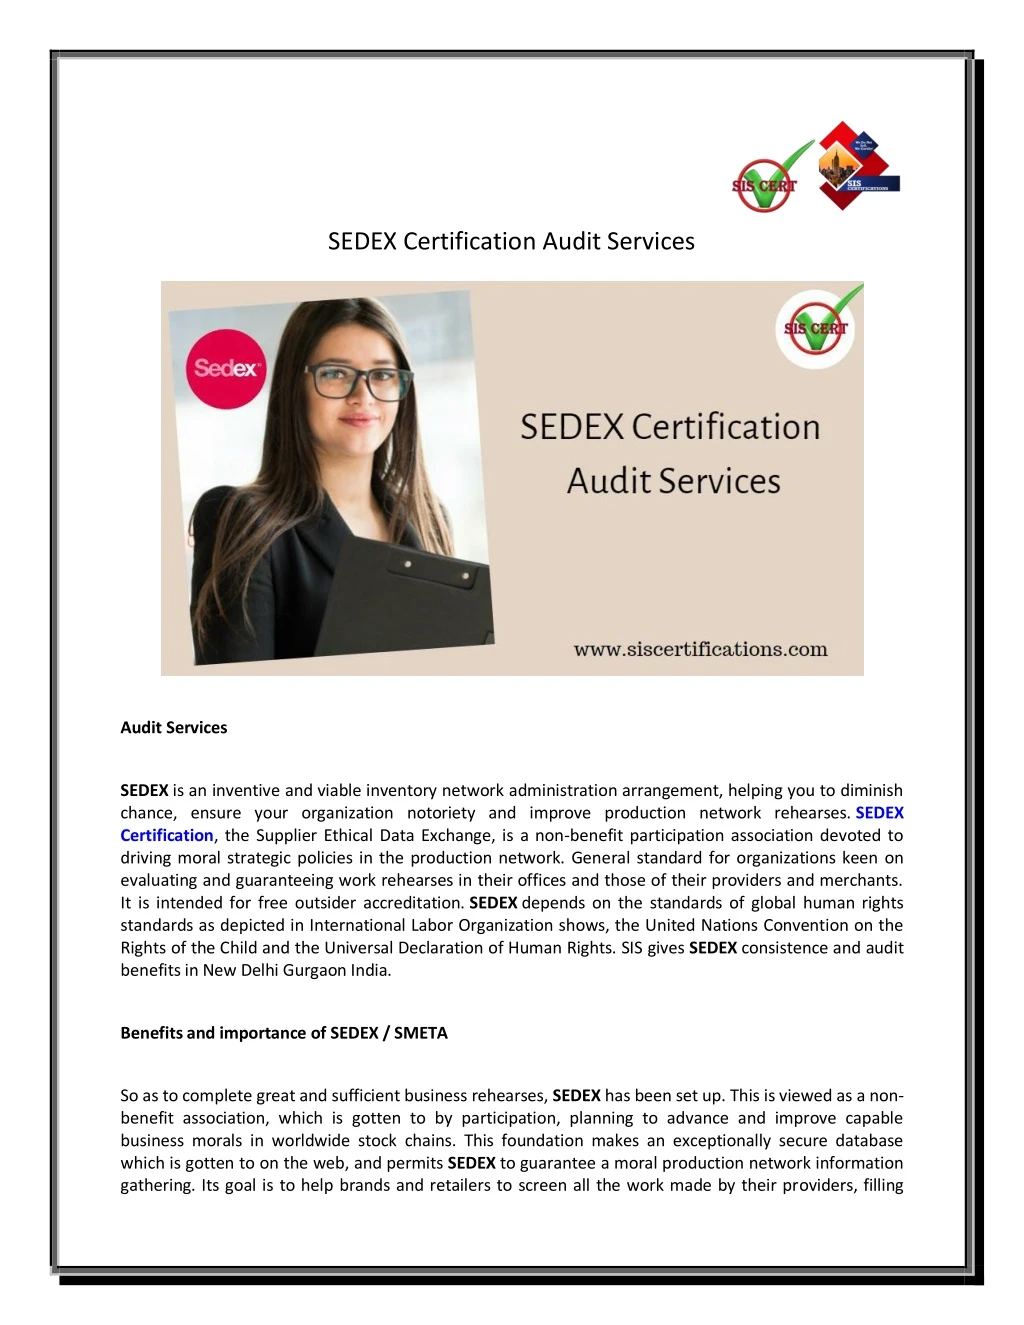 sedex certification audit services